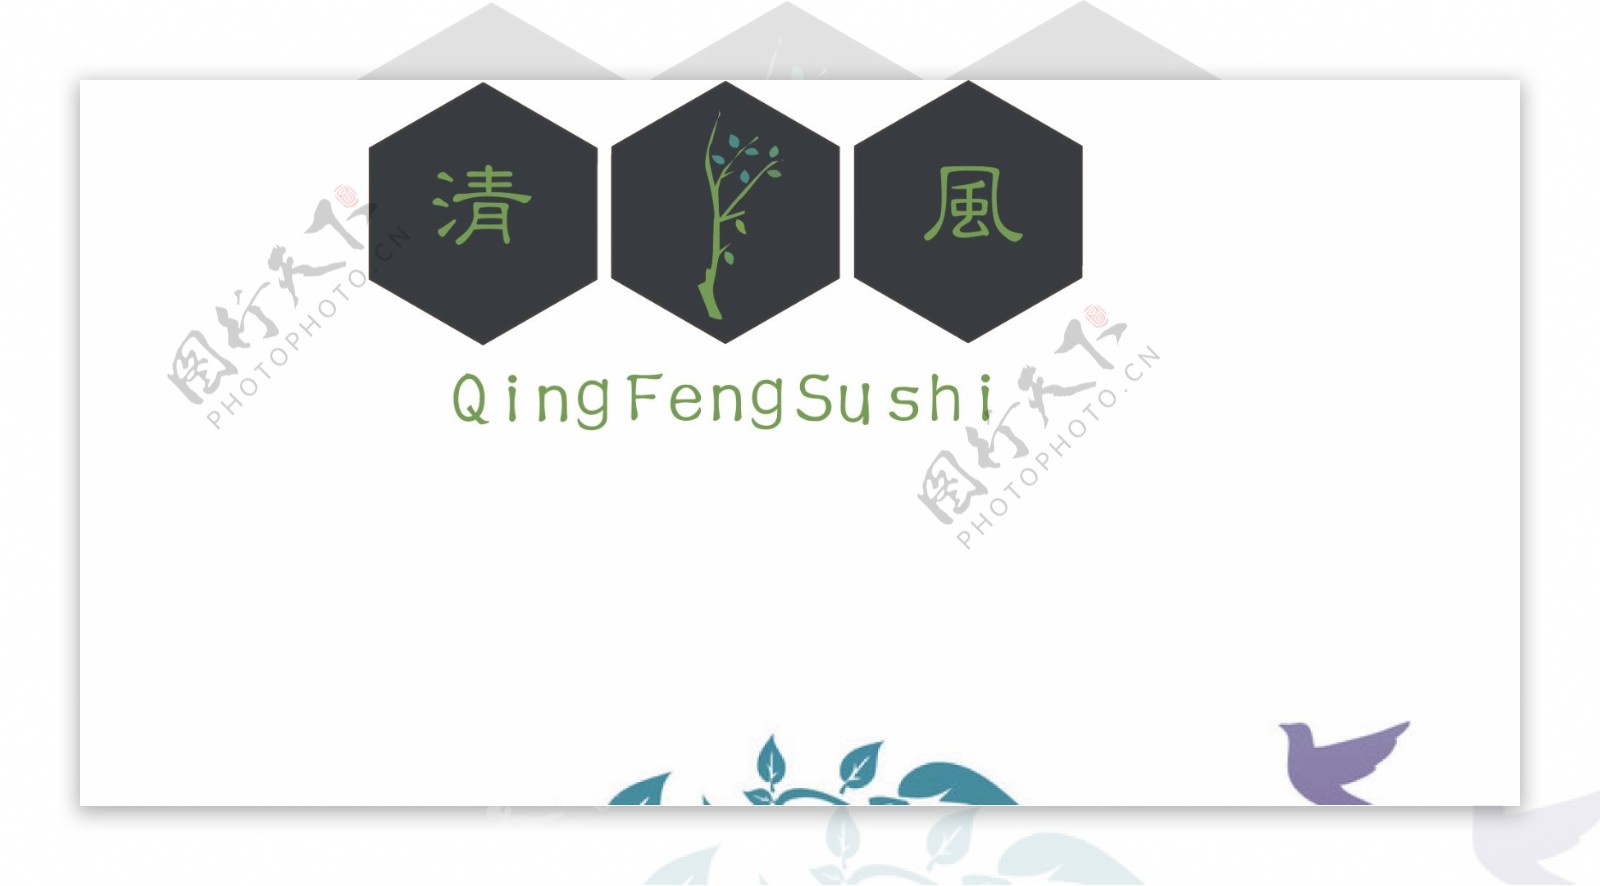 清风素食馆logo